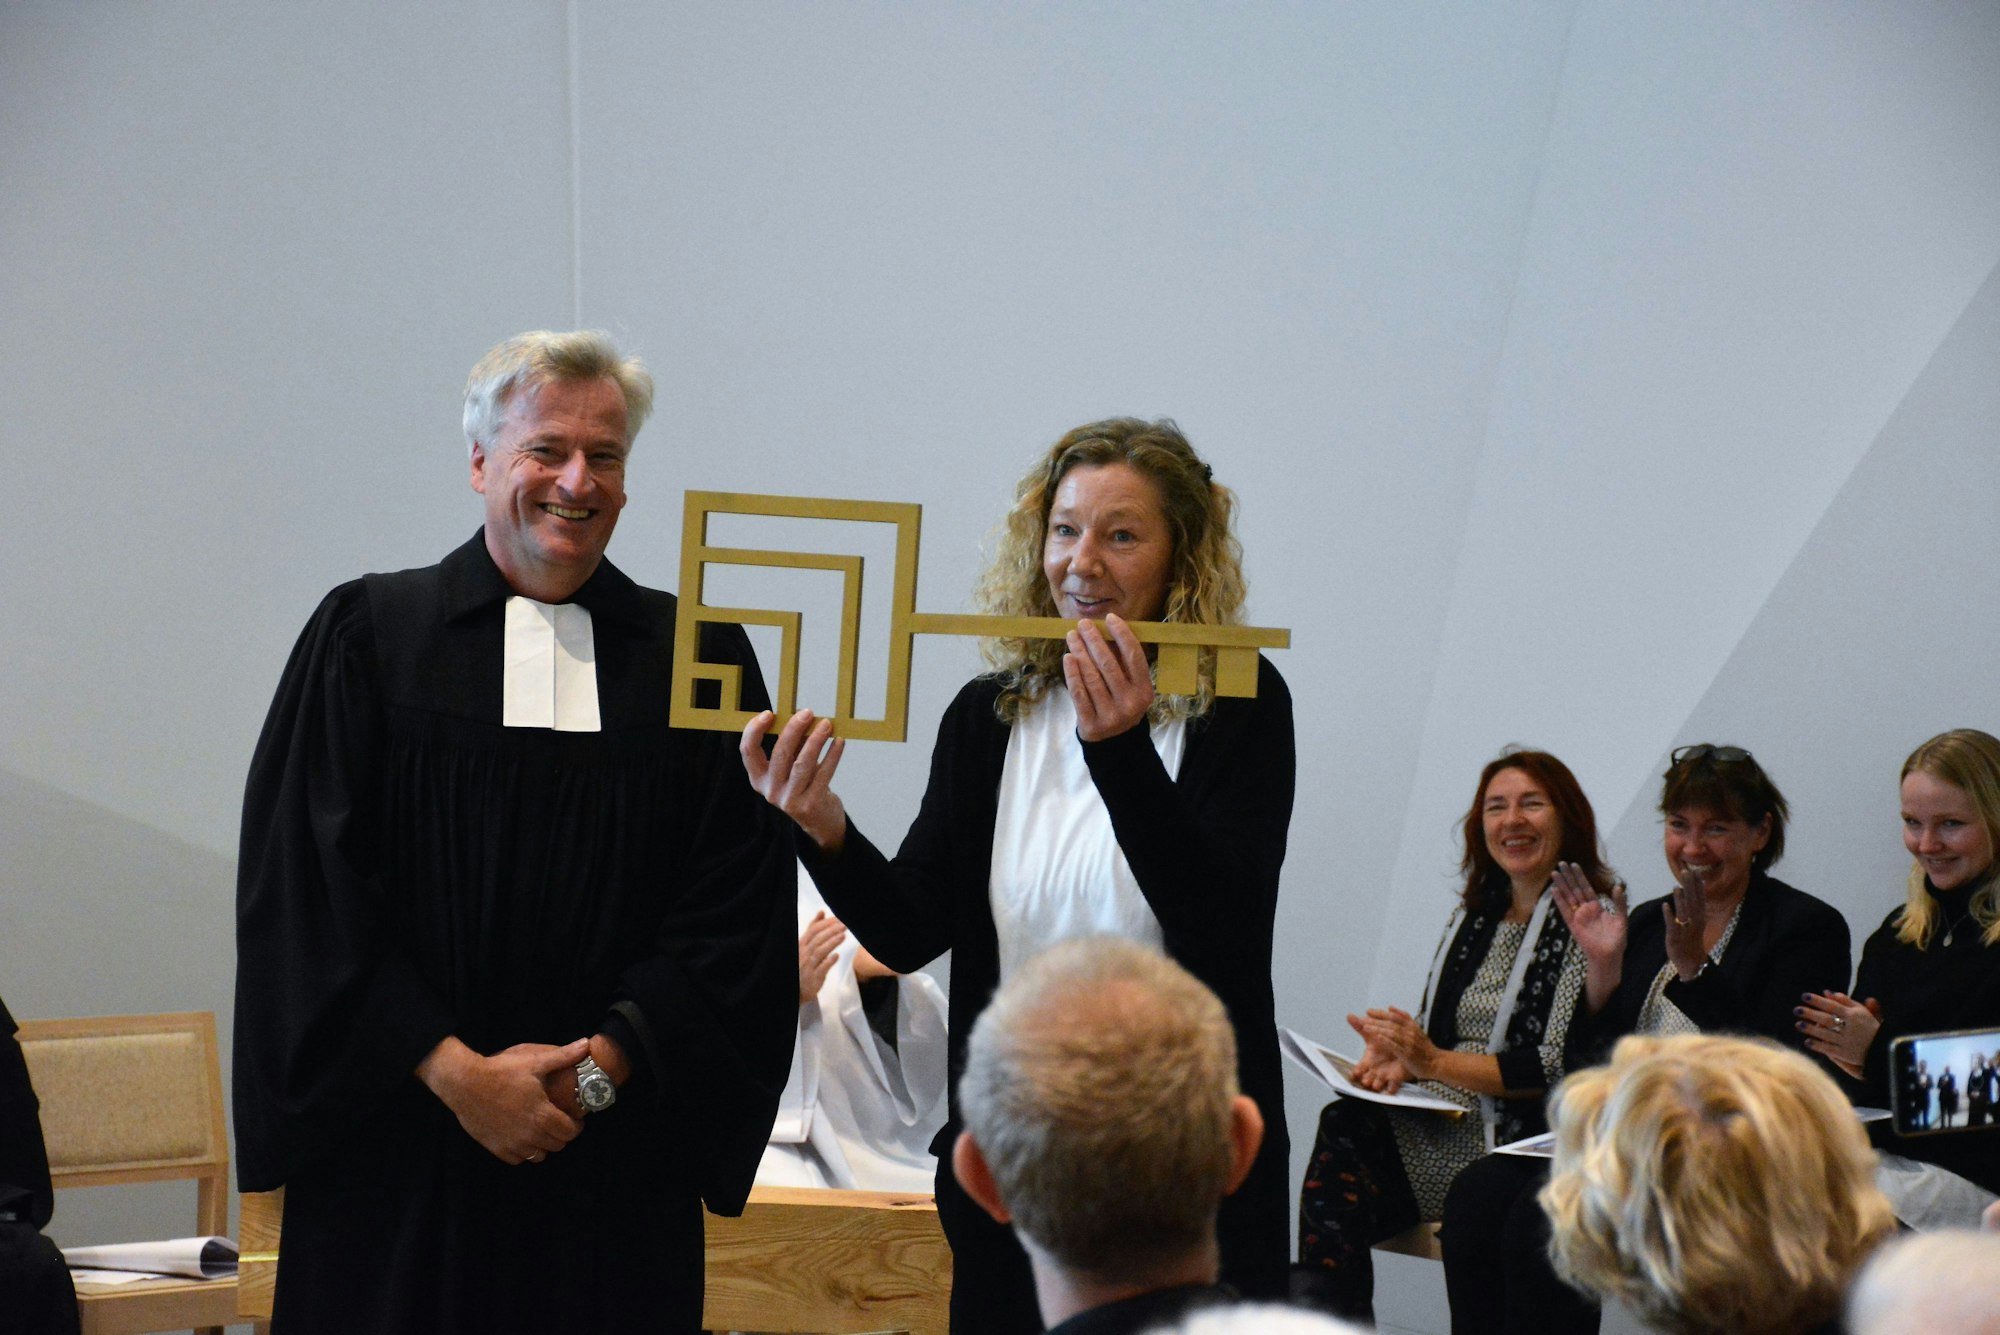 Pfarrer Markus Zimmermann und Küsterin Kerstin Müller bei der symbolischen Schlüsselübergabe während der Eröffnung der Erlöserkirche in Weidenpesch.